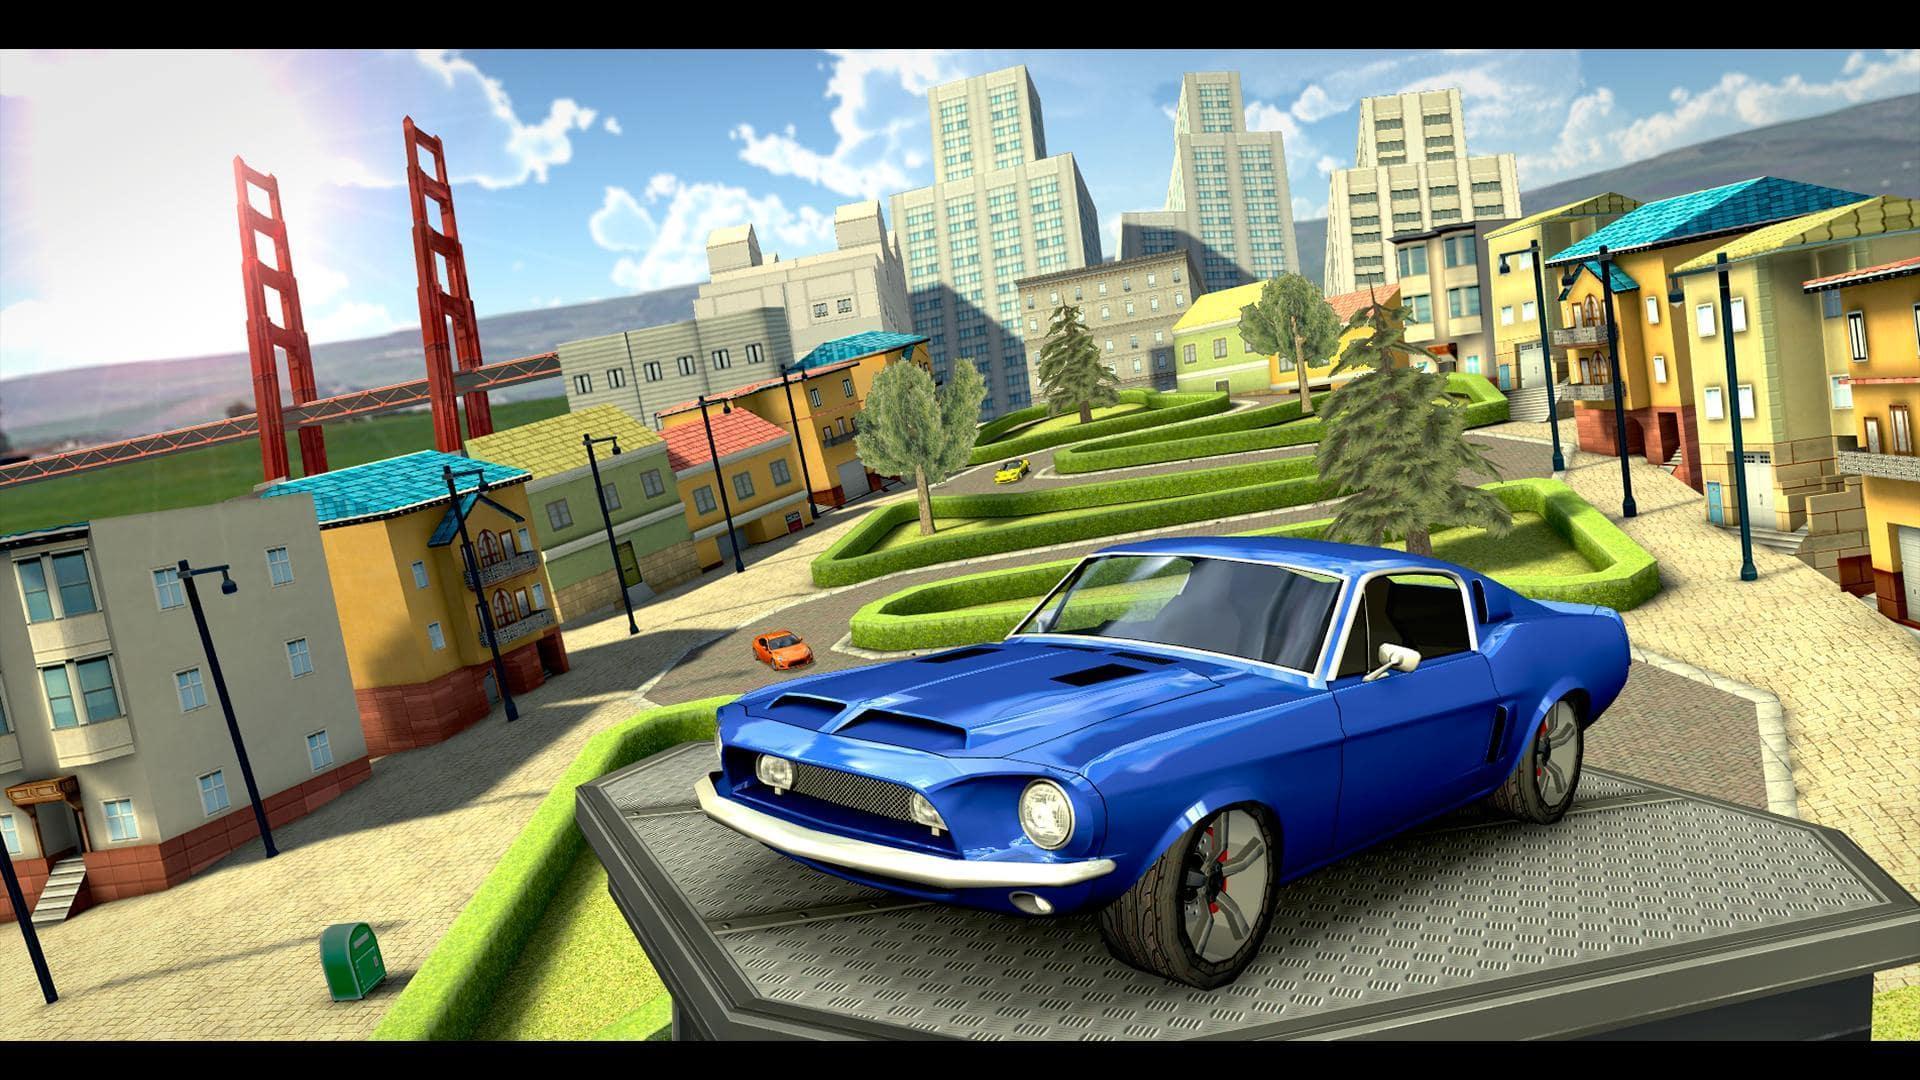 Screenshot 1 of Симулятор экстремального вождения автомобиля 1.0